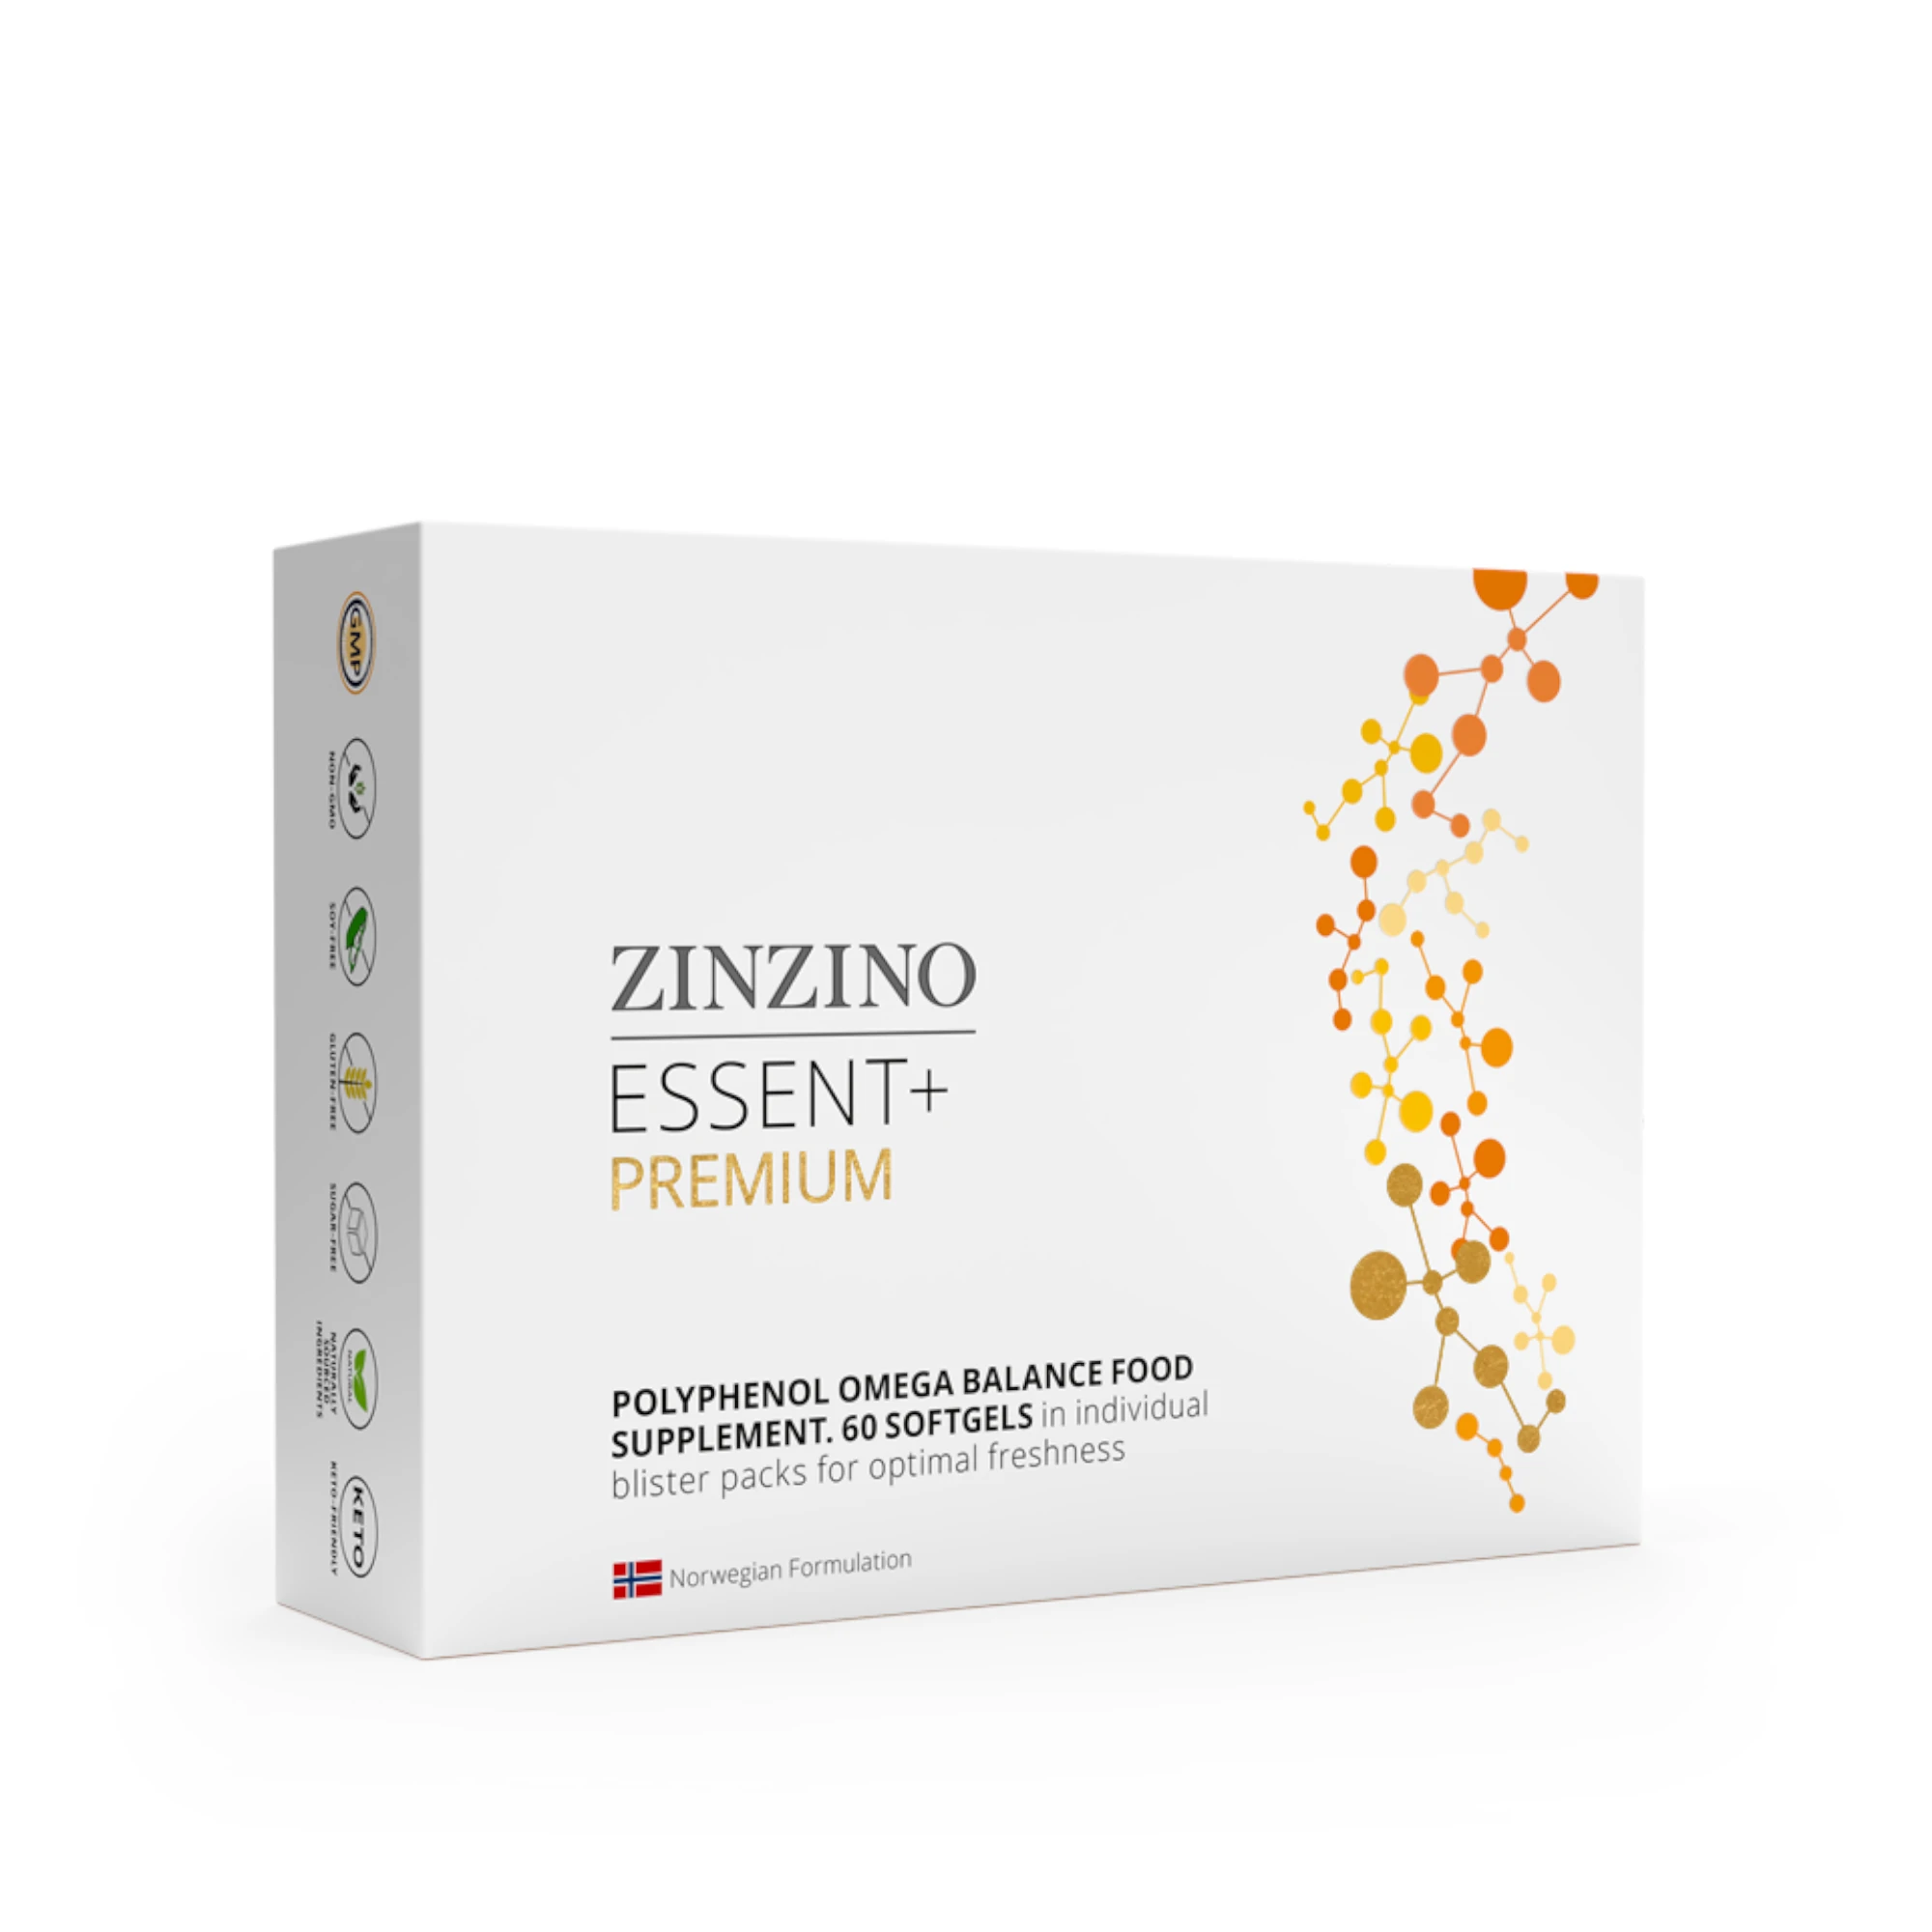 Zu sehen ist eine Schachtel Zinzino Essent Plus Premium vor weißem Hintergrund. Es handelt sich um ein Nahrungsergänzungsmittel von Zinzino. 